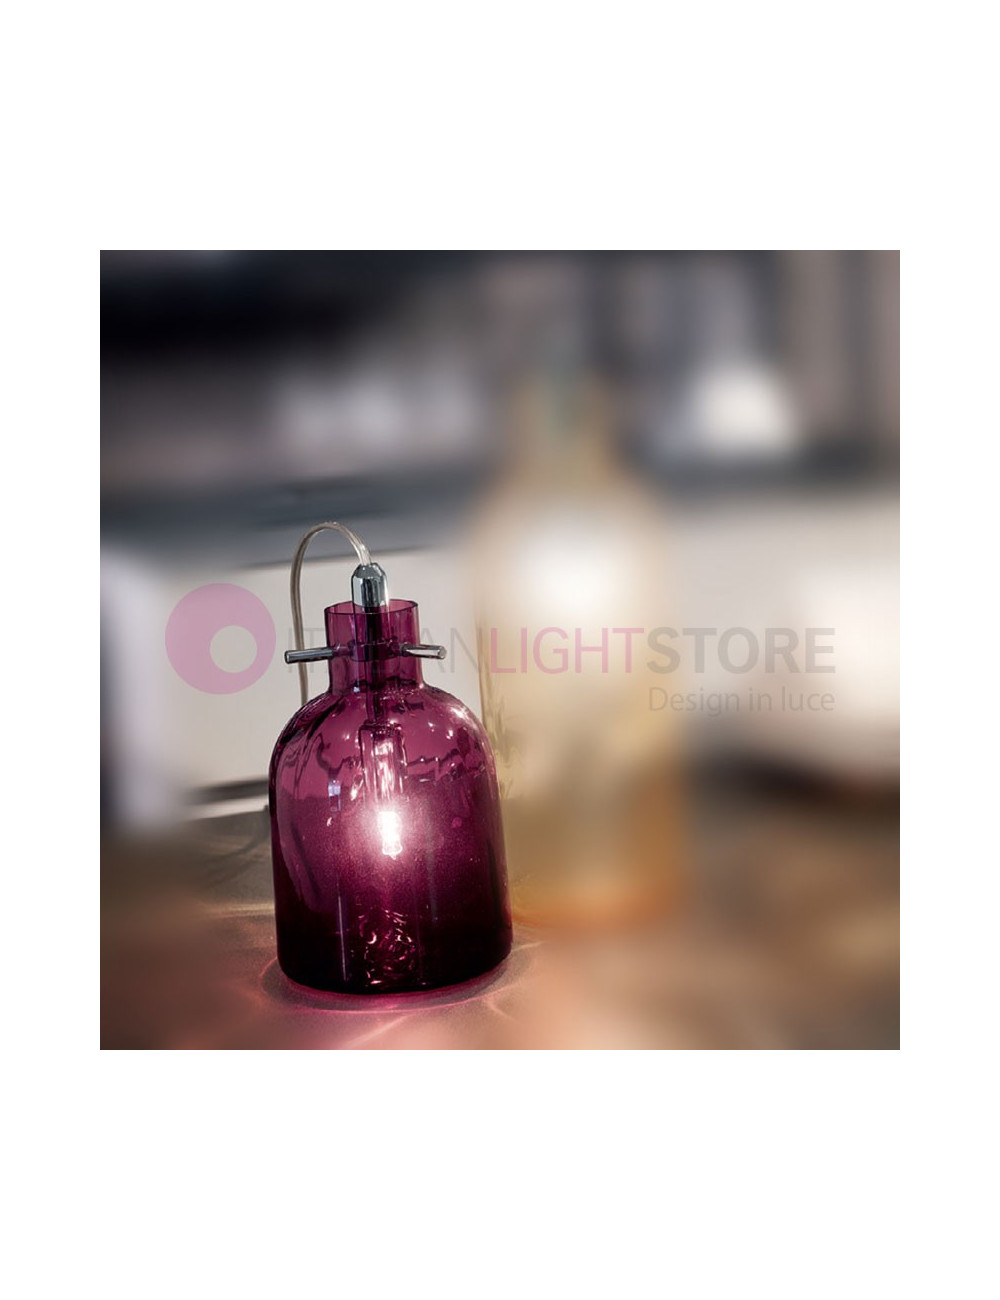 BOSSA NOVA Selene Illuminazione | Lampada da Appoggio Tavolo Bottiglia in Vetro Design